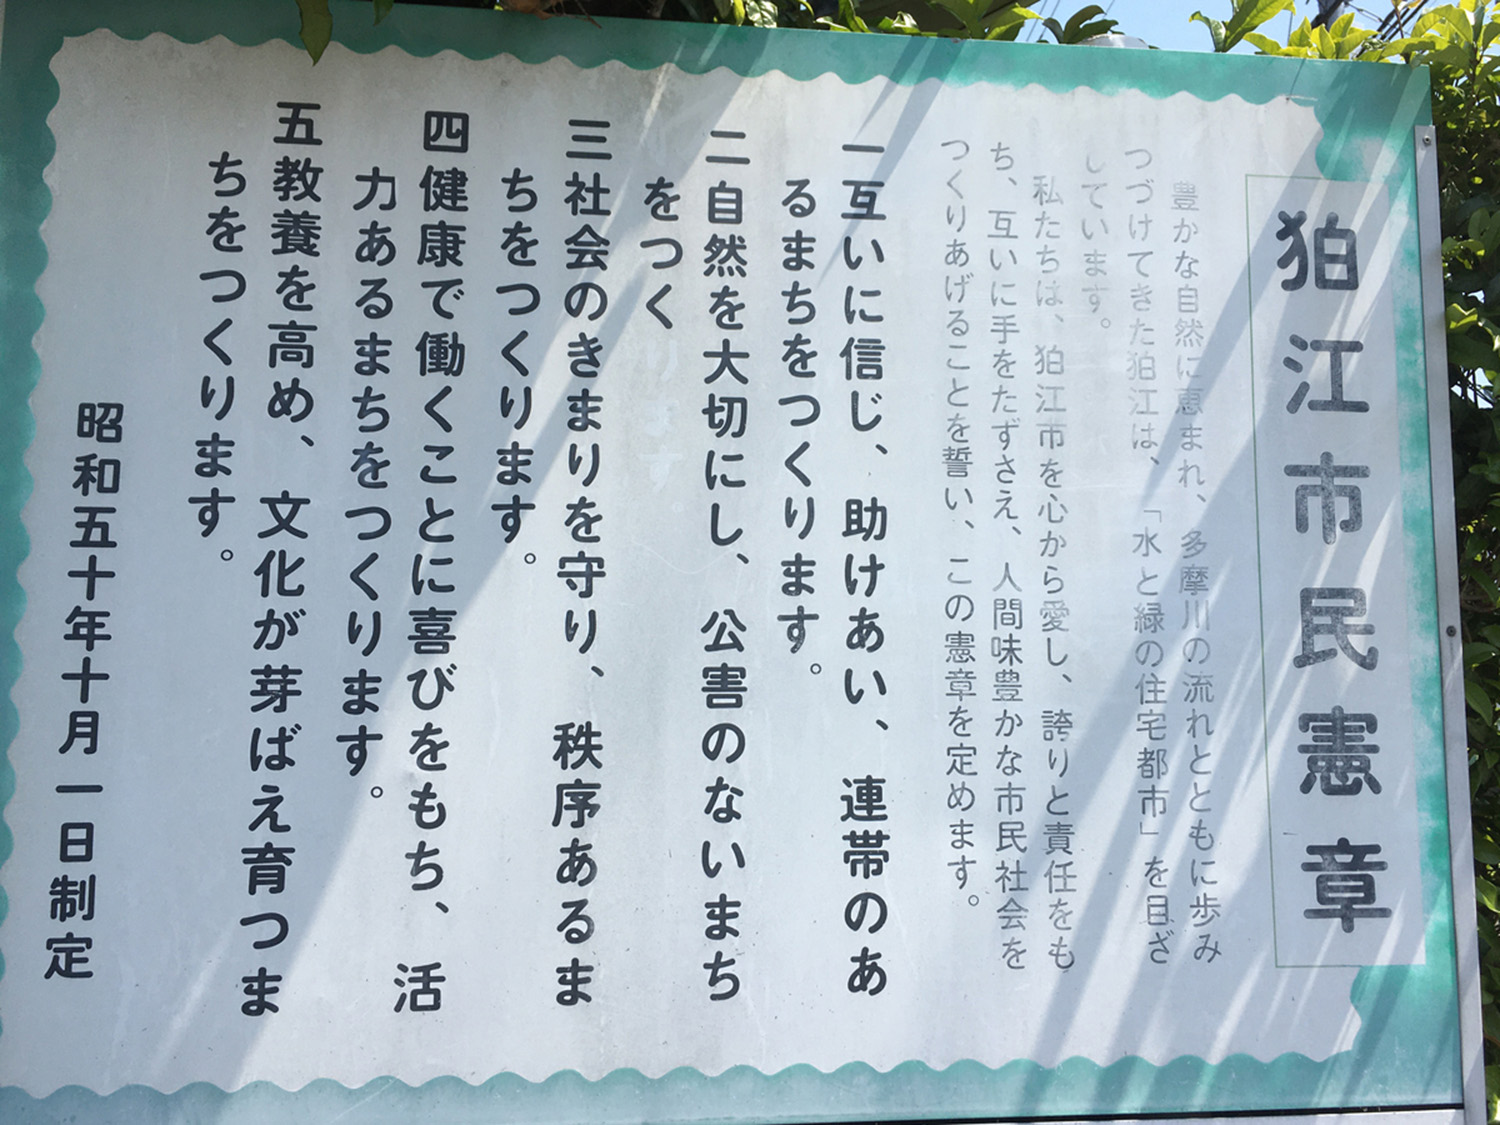 市民憲章改定の半年前に撮影した旧狛江市民憲章。